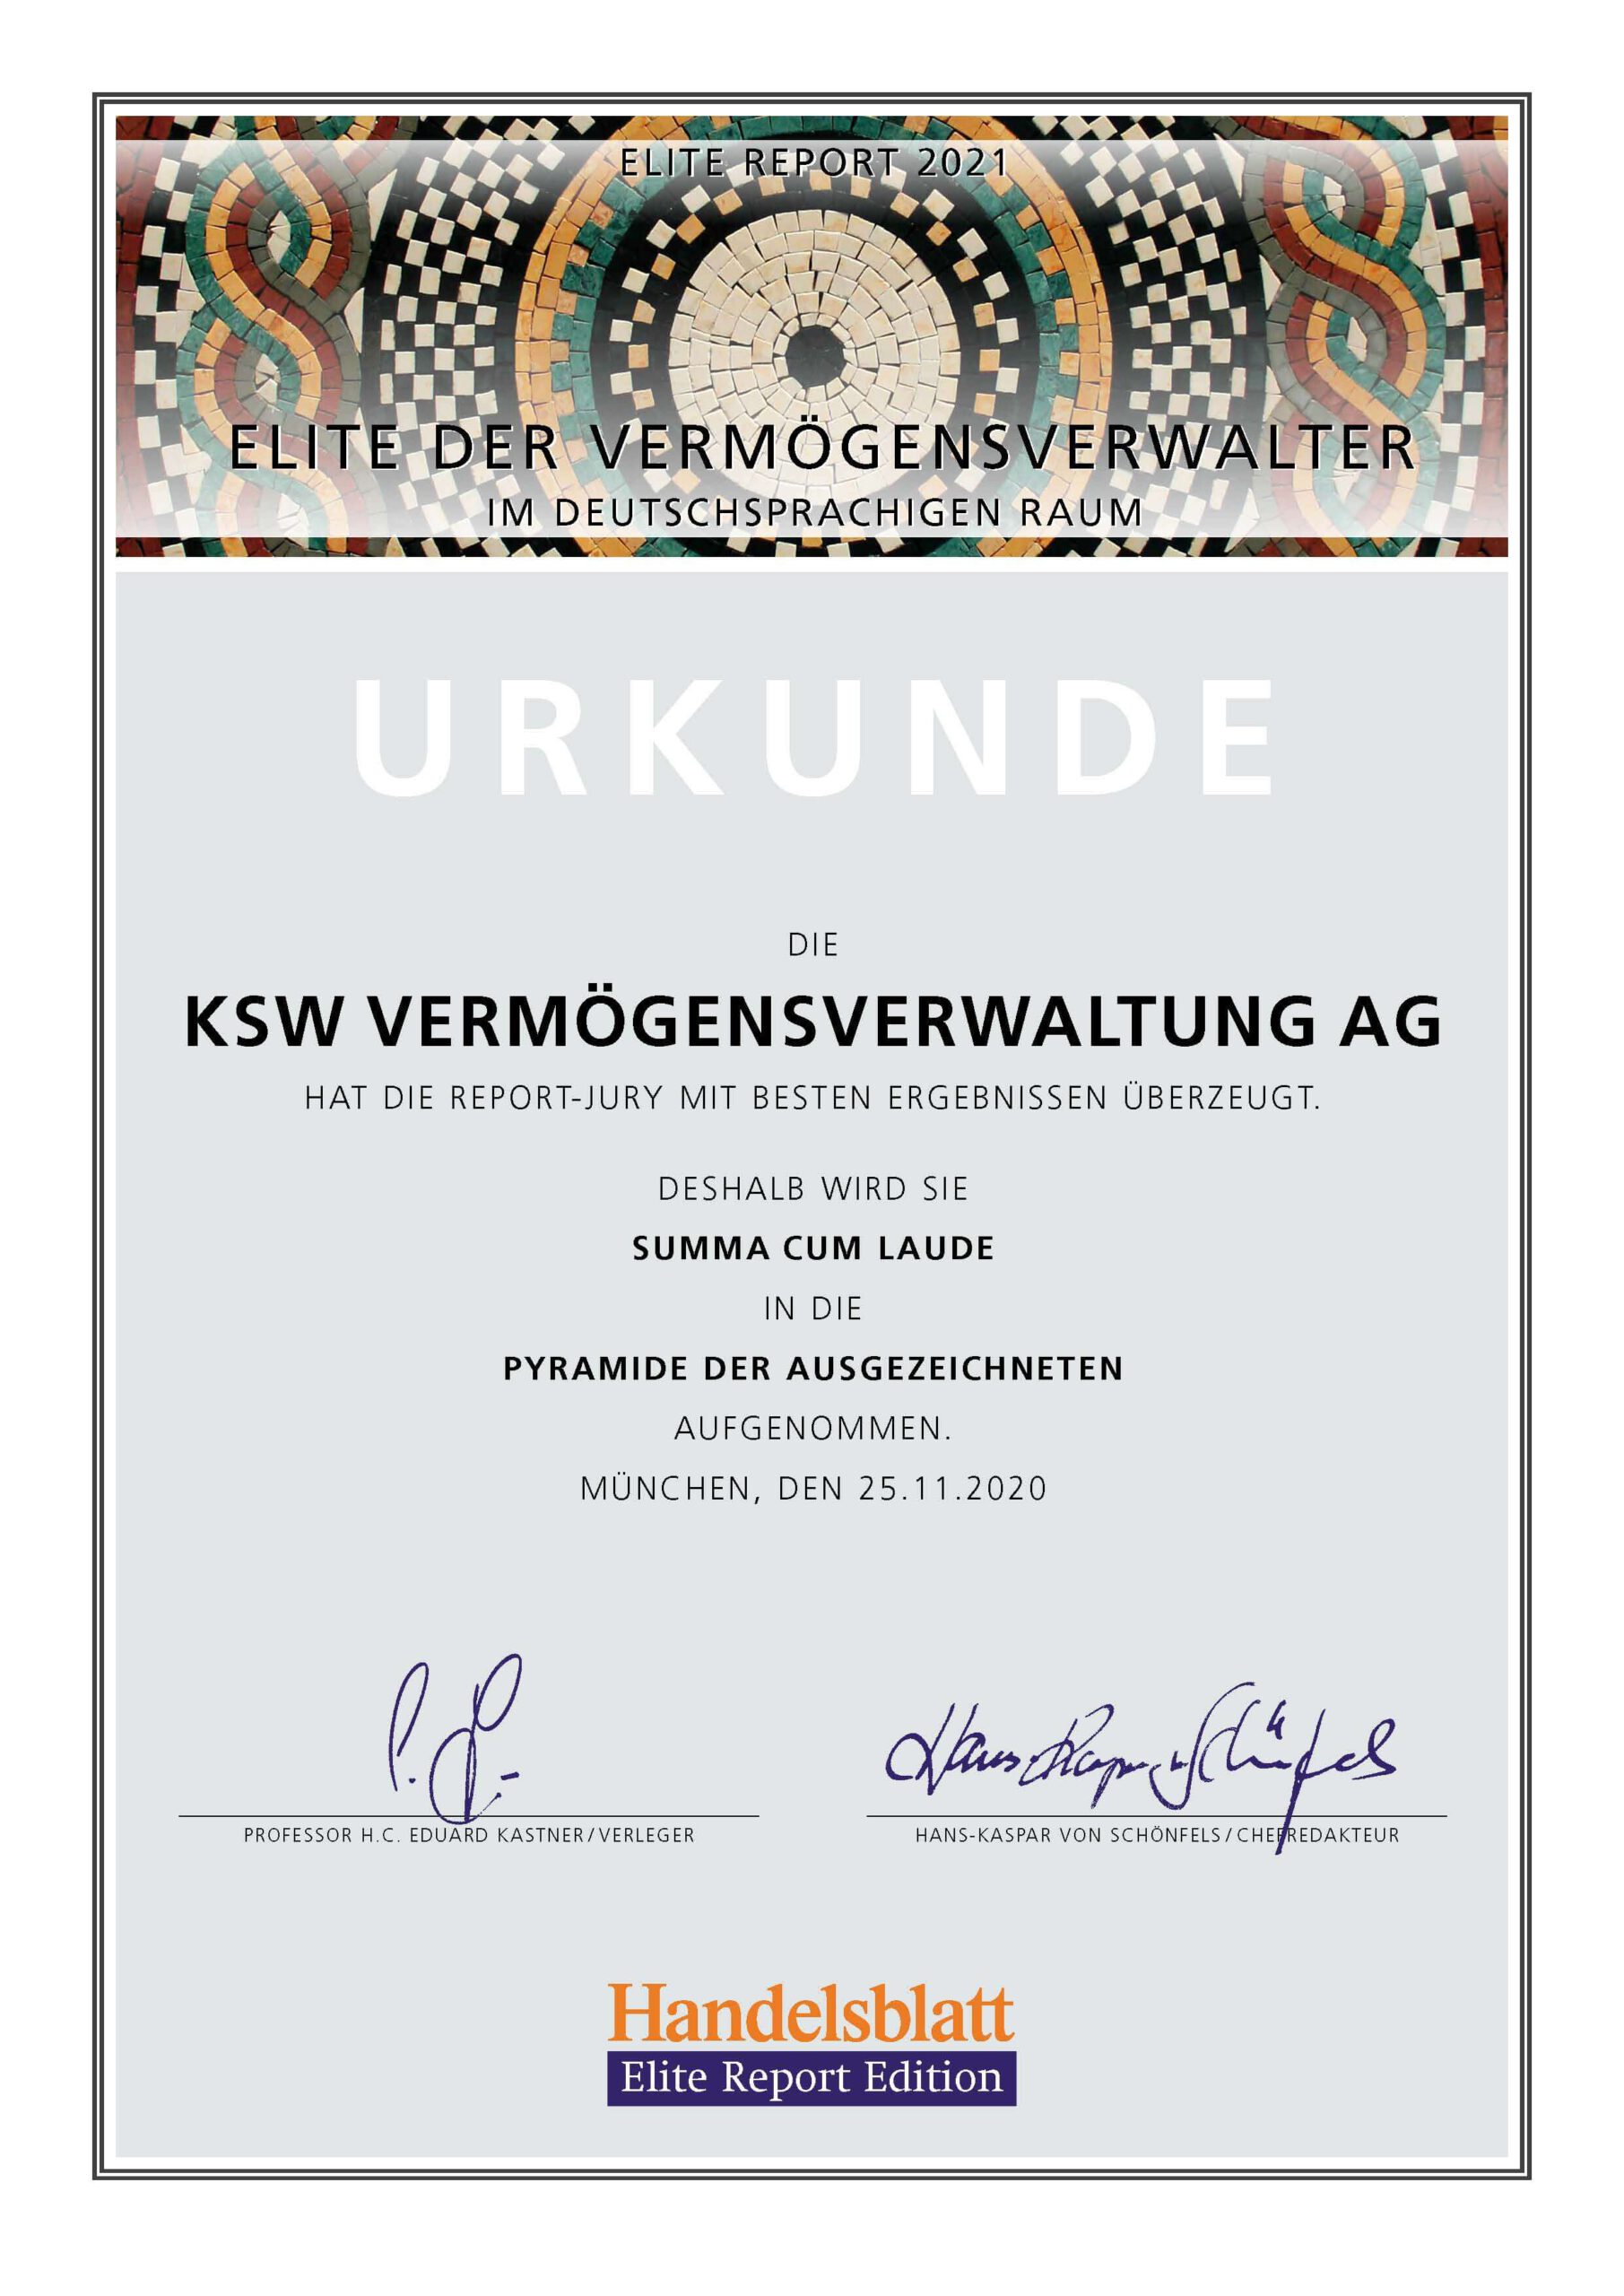 Urkunde mit summa cum laude der KSW Vermögensverwaltung AG 2020